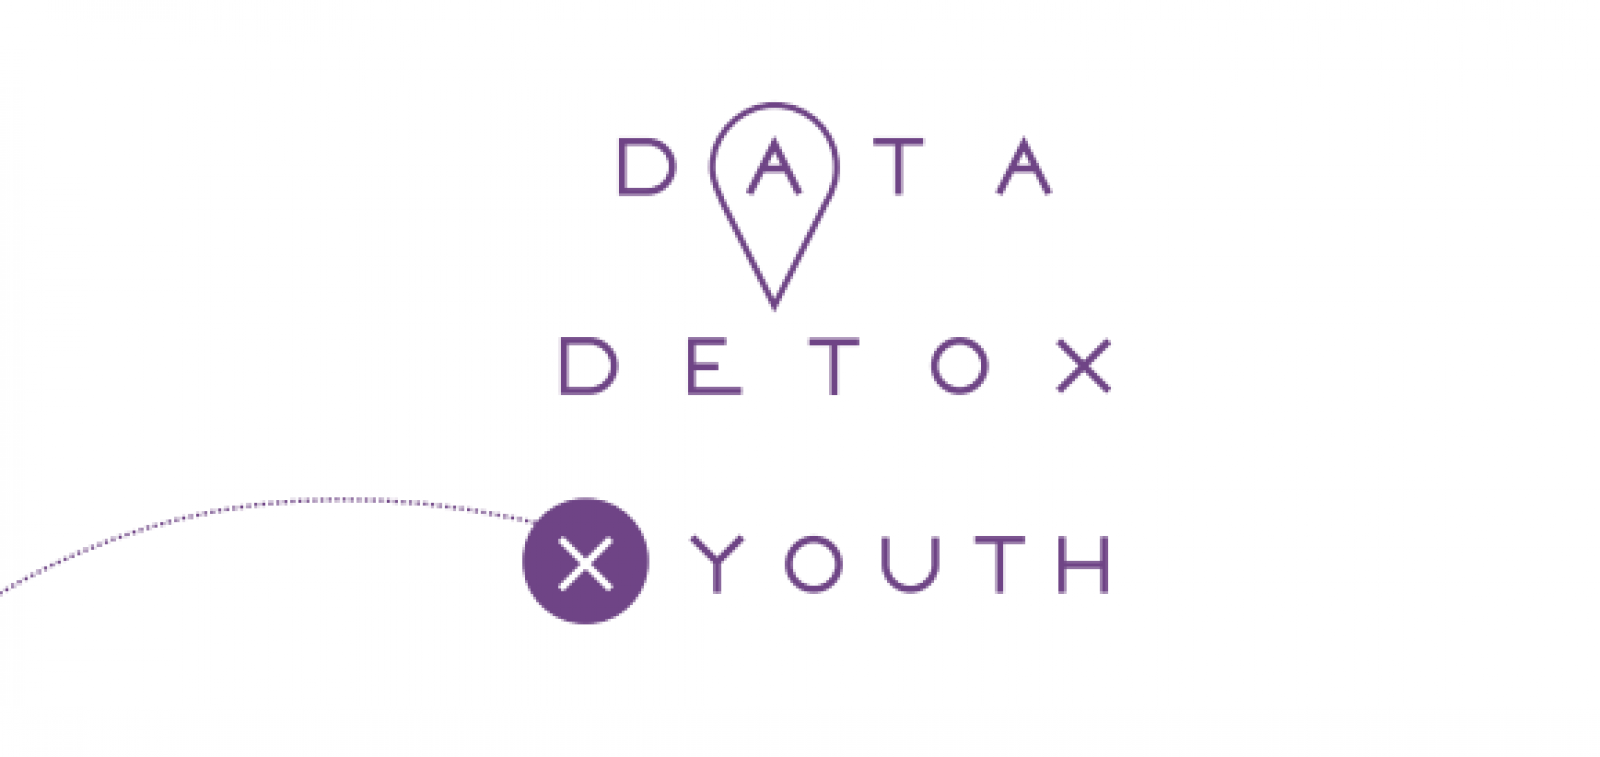 Data Detox Youth (Titolo)